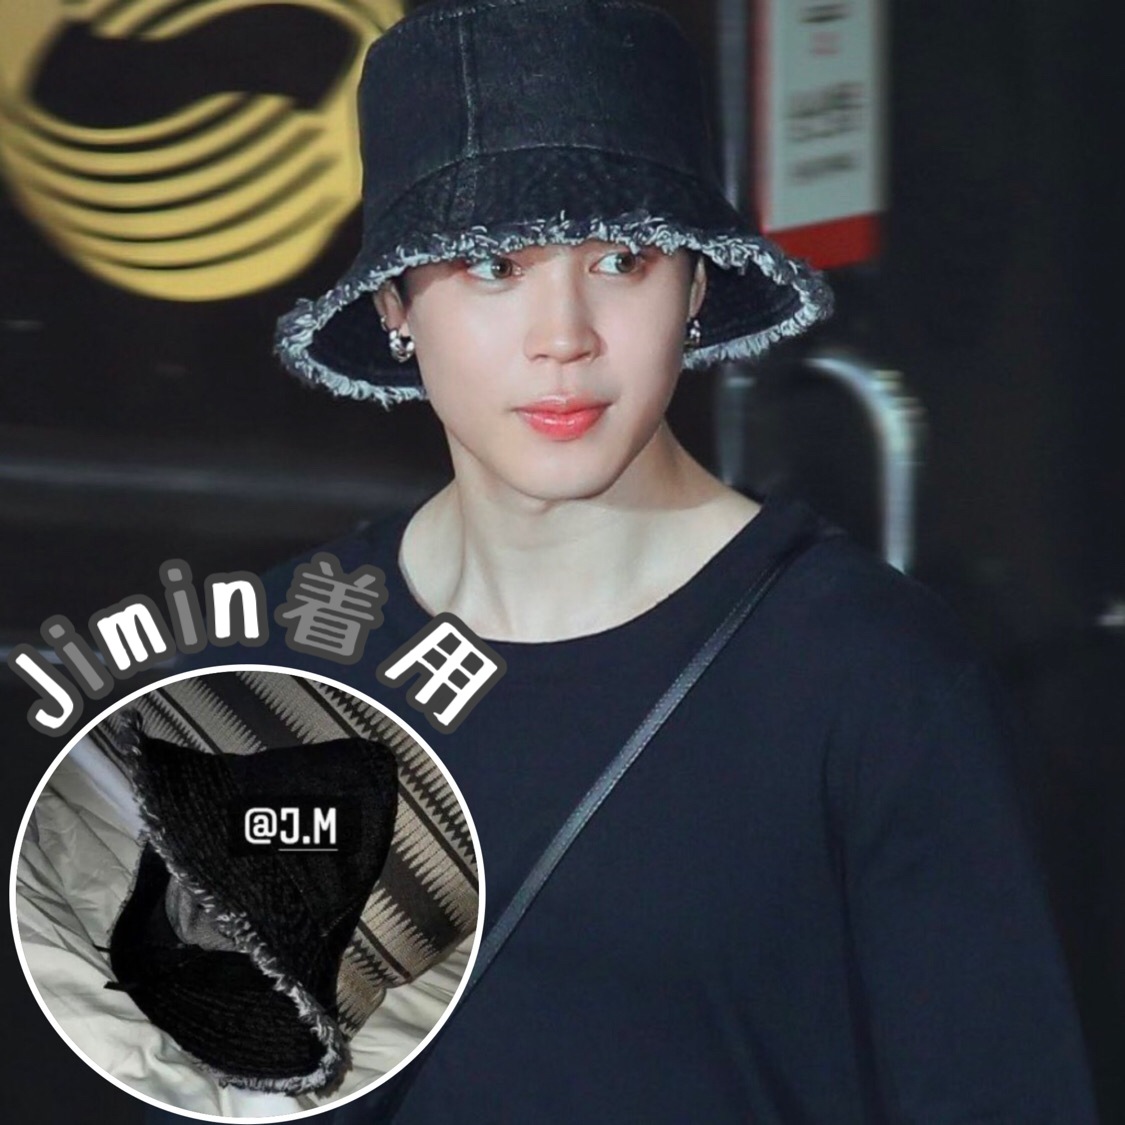 リバーシブル 韓国 帽子 黒 ストリート バケットハット ユニセックス 通販